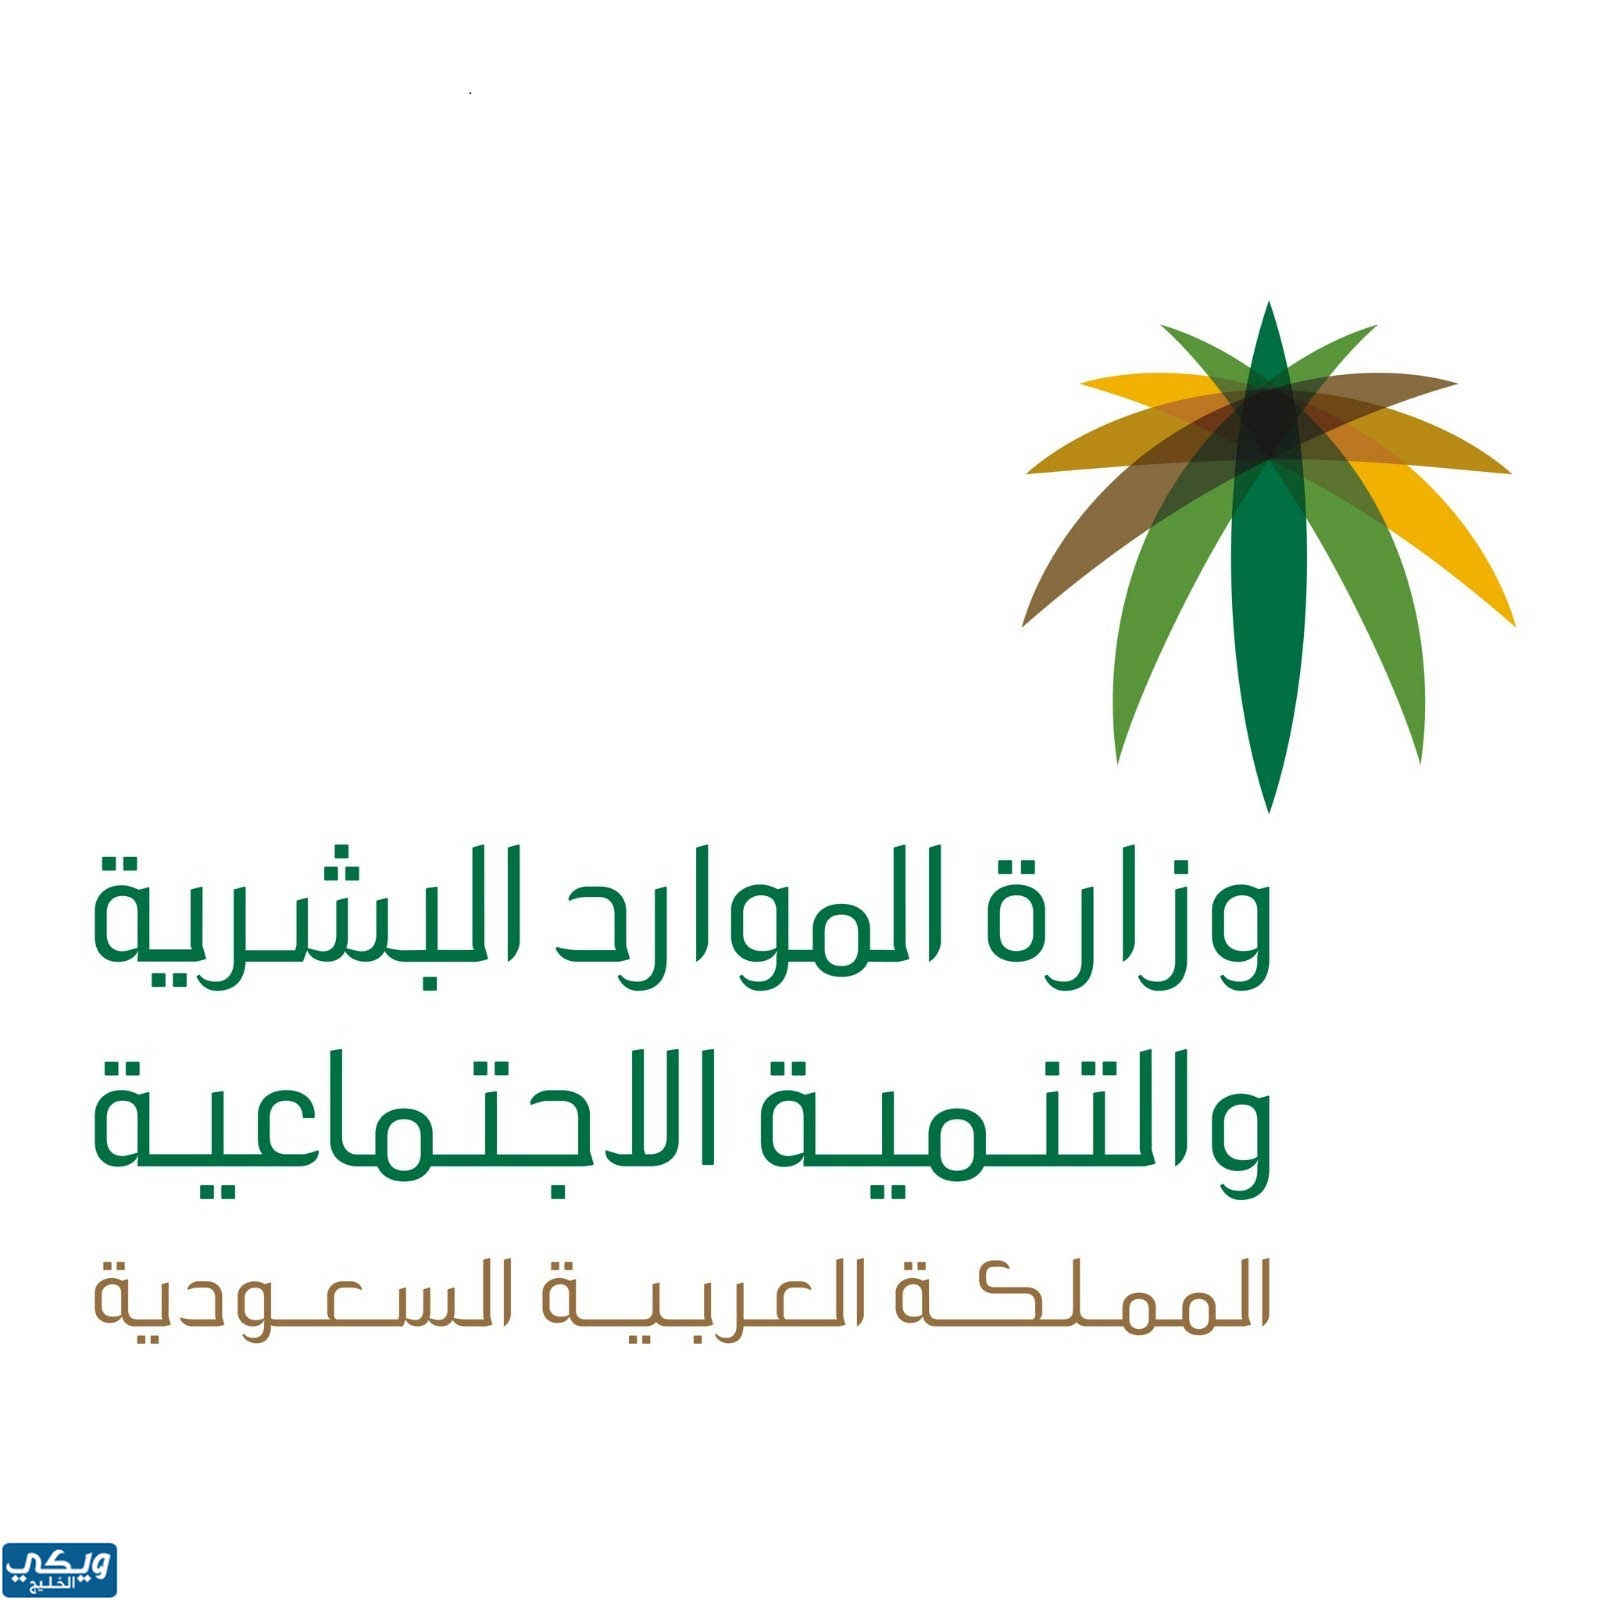 المادة 109 من نظام العمل السعودي